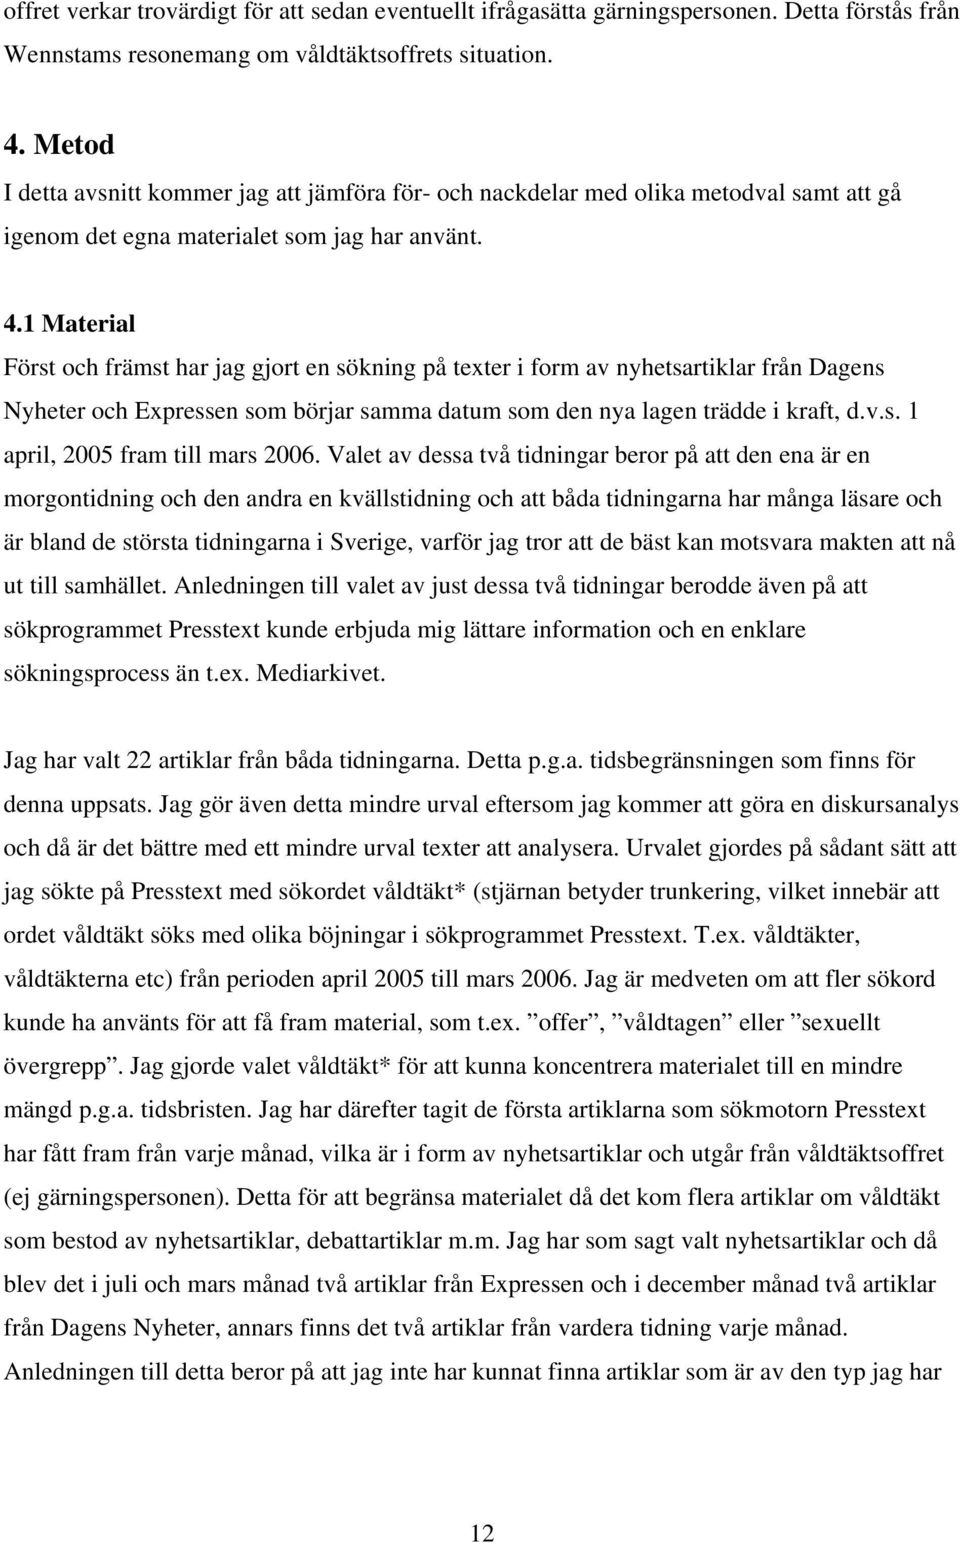 1 Material Först och främst har jag gjort en sökning på texter i form av nyhetsartiklar från Dagens Nyheter och Expressen som börjar samma datum som den nya lagen trädde i kraft, d.v.s. 1 april, 2005 fram till mars 2006.